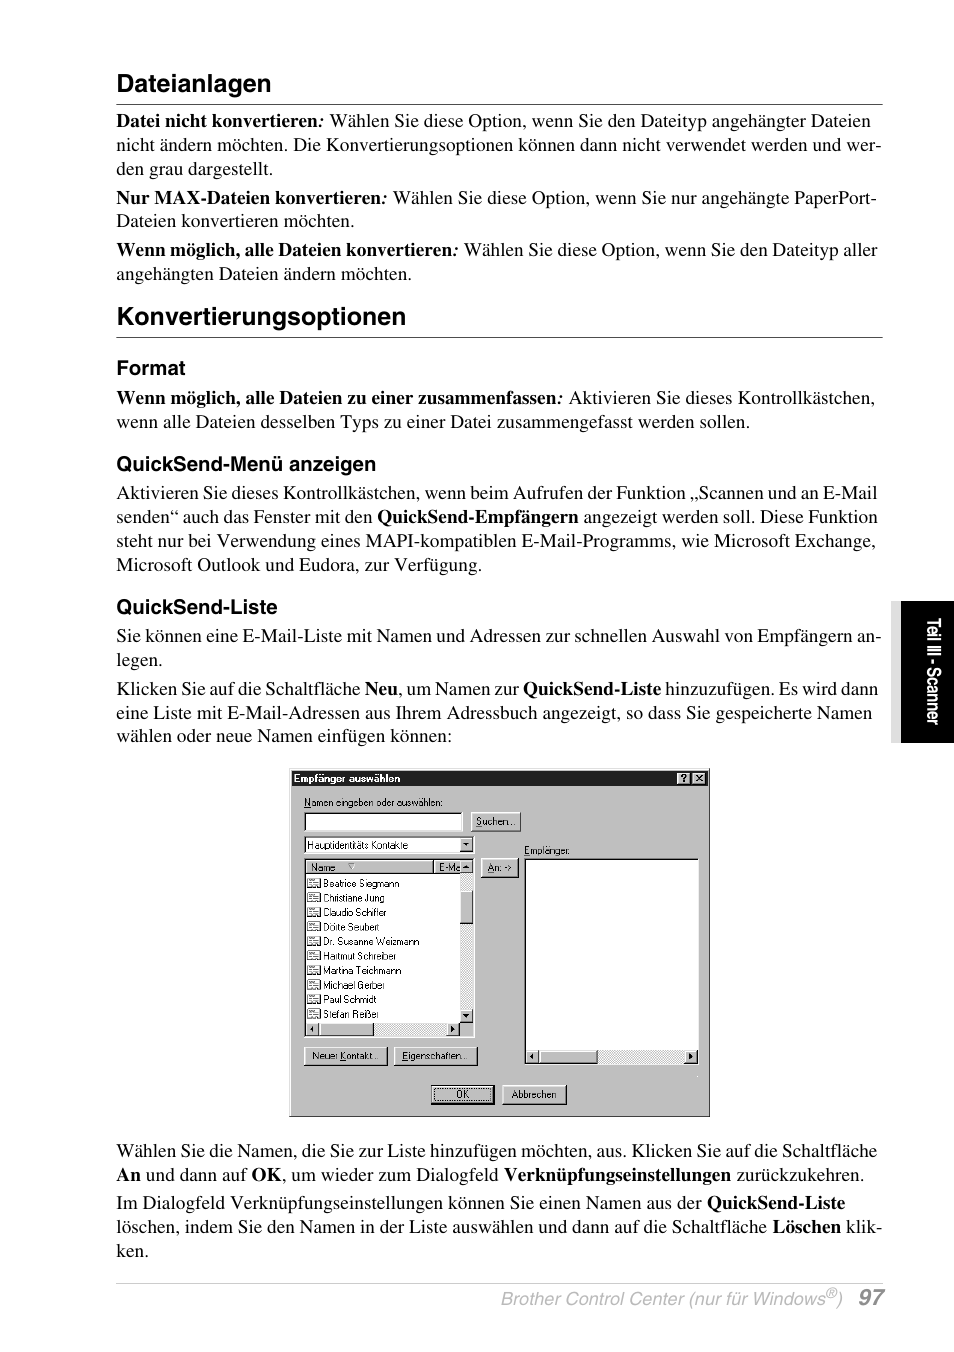 Dateianlagen, Konvertierungsoptionen, Format | Quicksend-menü anzeigen, Quicksend-liste | Brother MFC-9070 Benutzerhandbuch | Seite 106 / 172